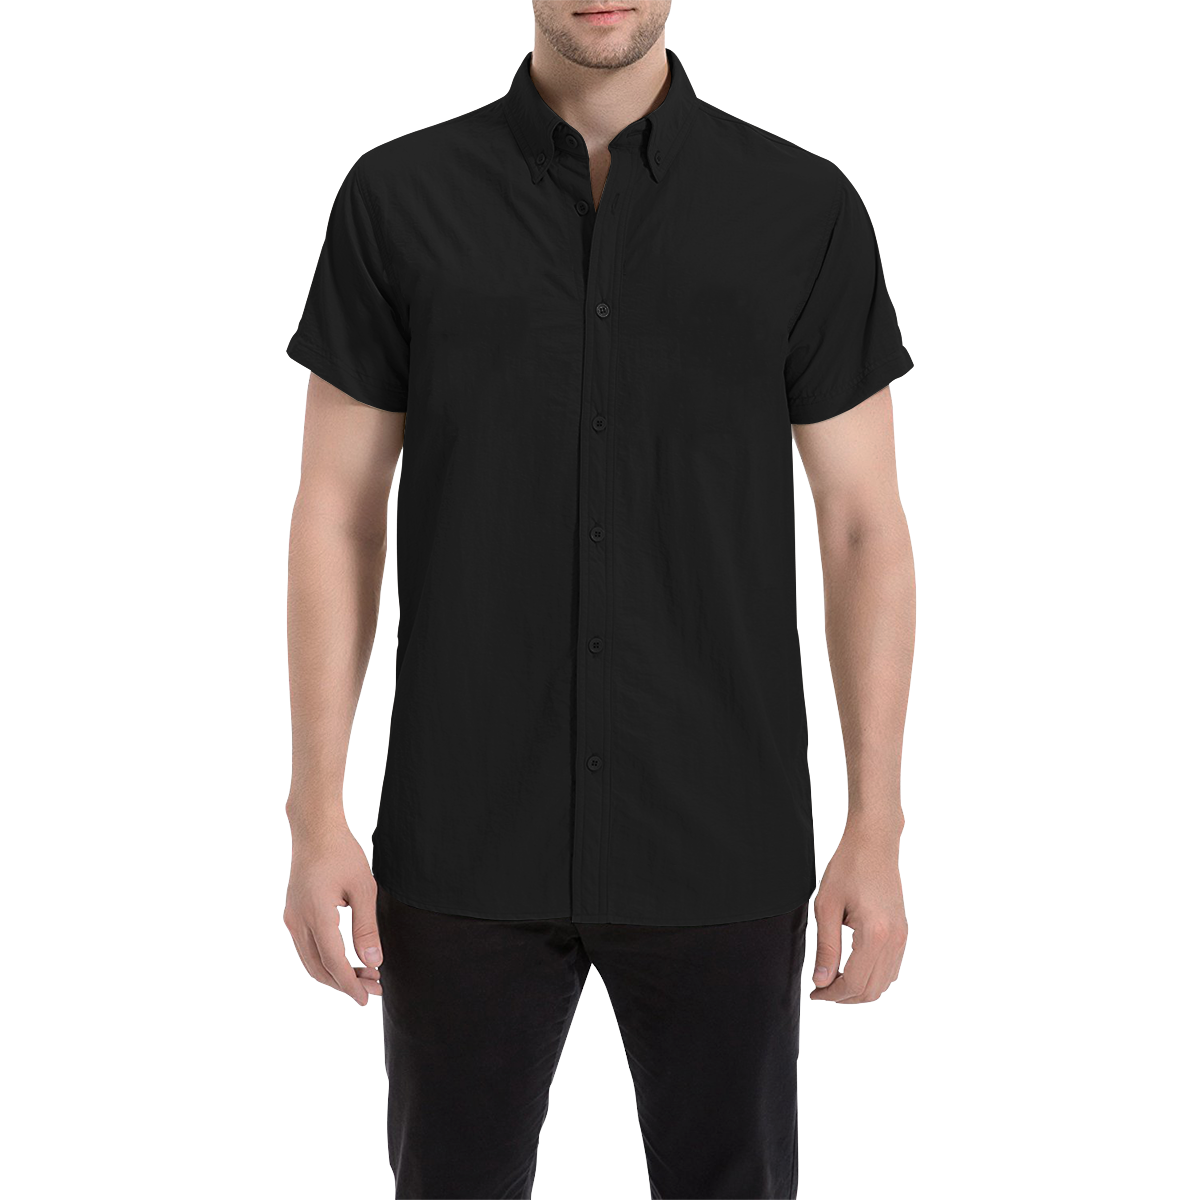 Simply Black Men's All Over Print Short Sleeve Shirt (Model T53)